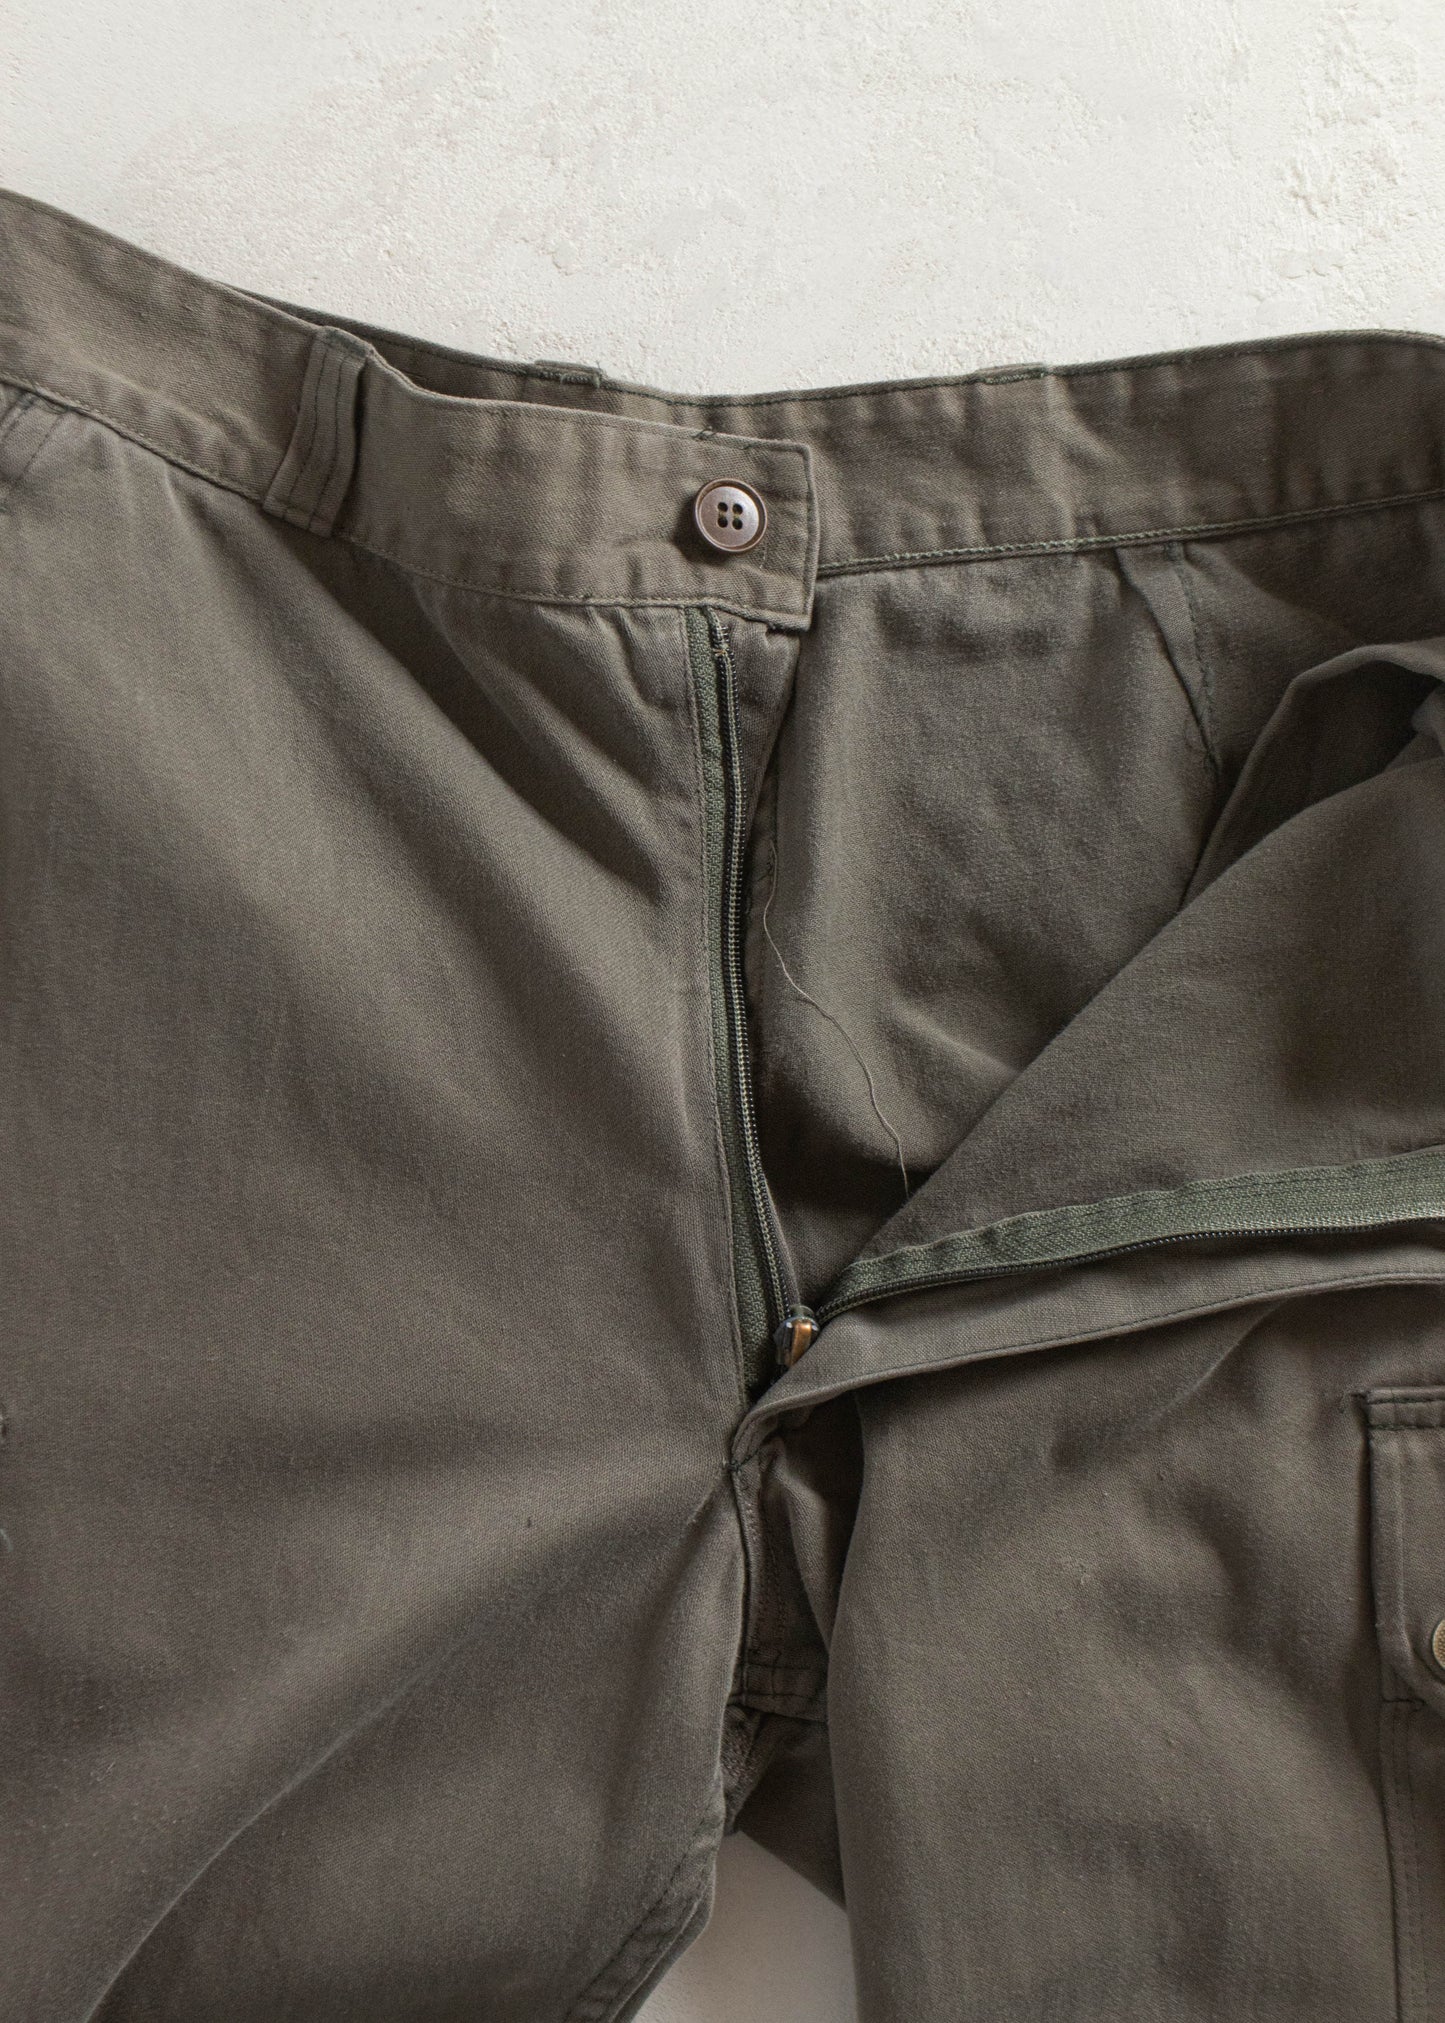 Vintage 1980s Paul Boyé French Military Cargo Pants Size Women's 29 Men's 32